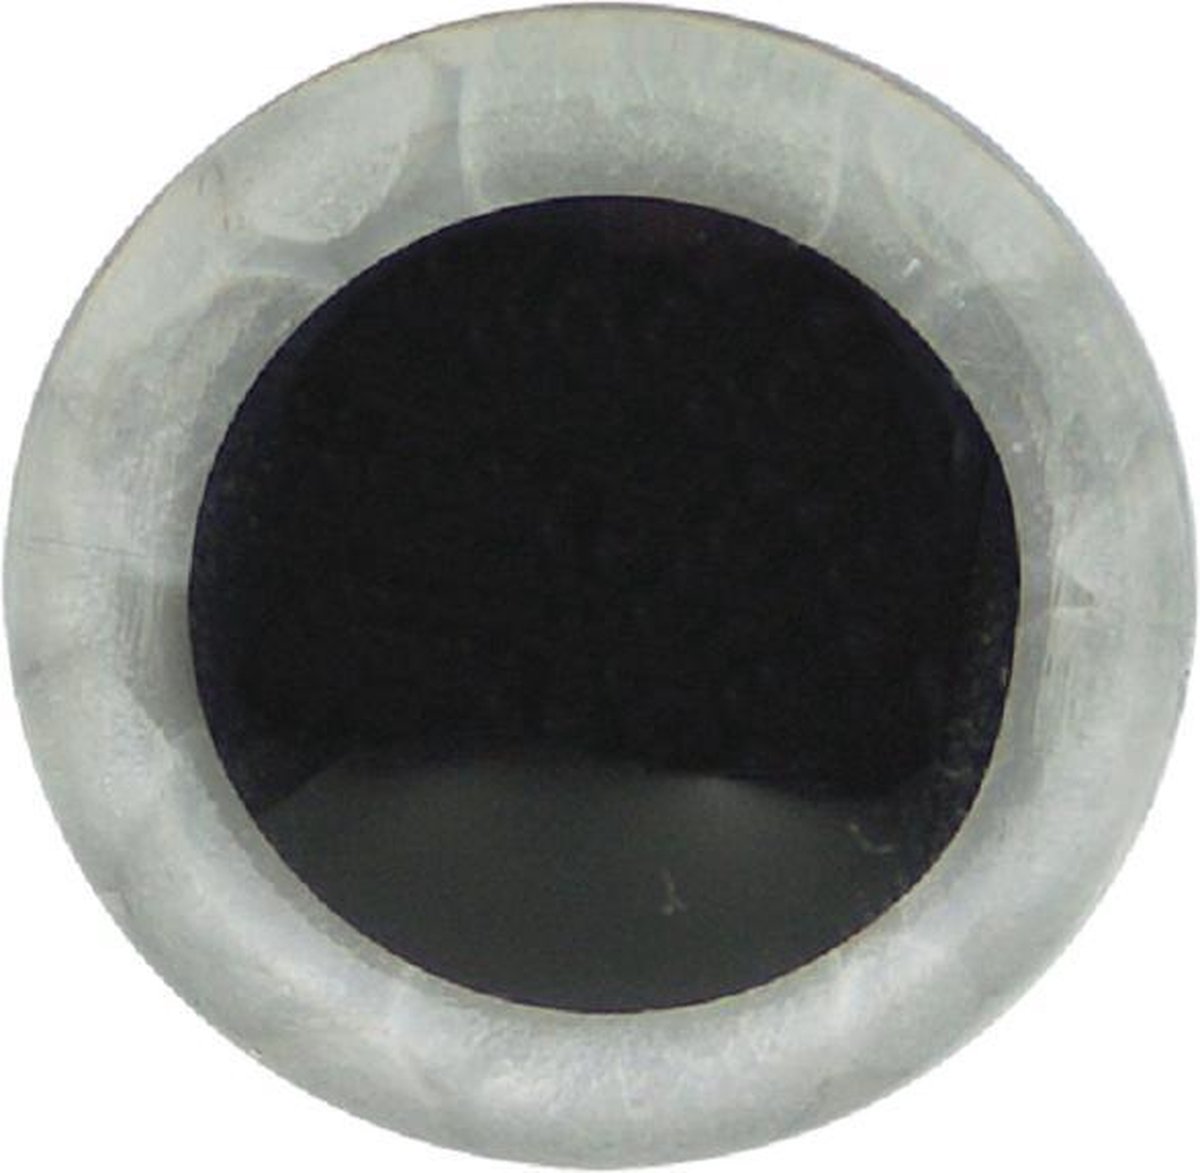 Veiligheidsogen 18mm (zak à 10st) Tweekleurig transparant met zwarte iris